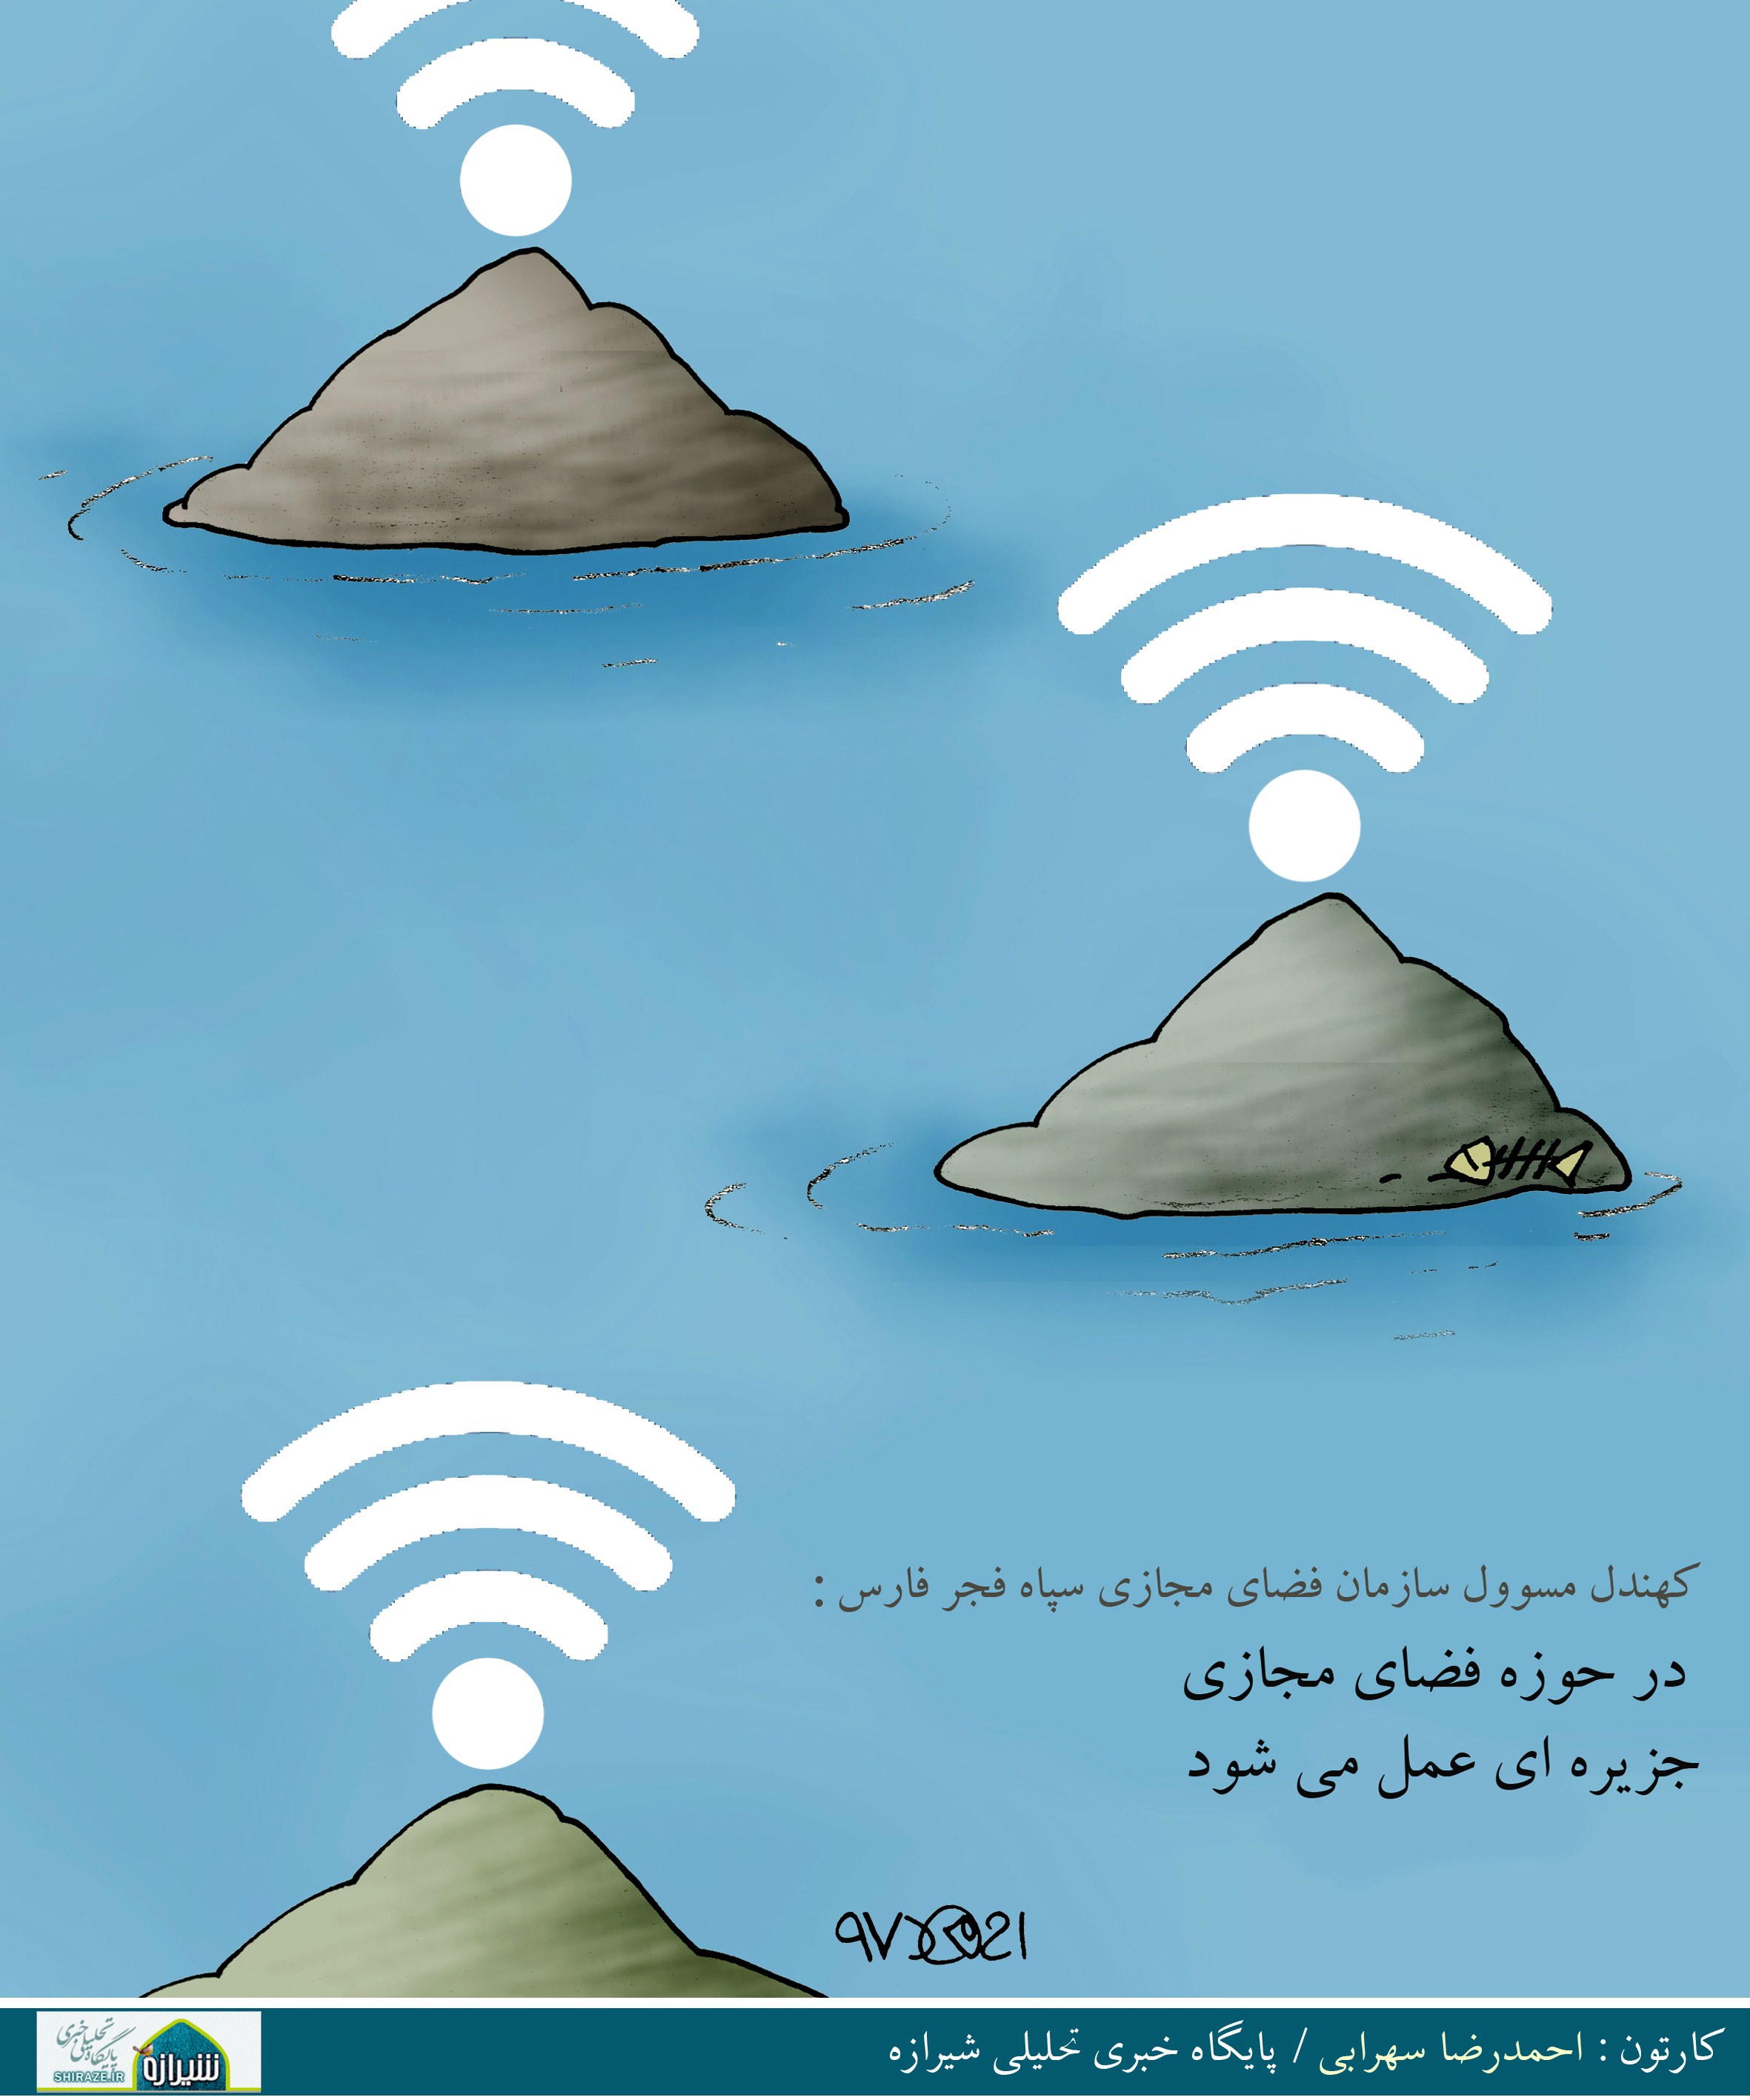 کاریکاتور شیرازه؛ در حوزه فضای مجازی جزیره ای عمل می شود